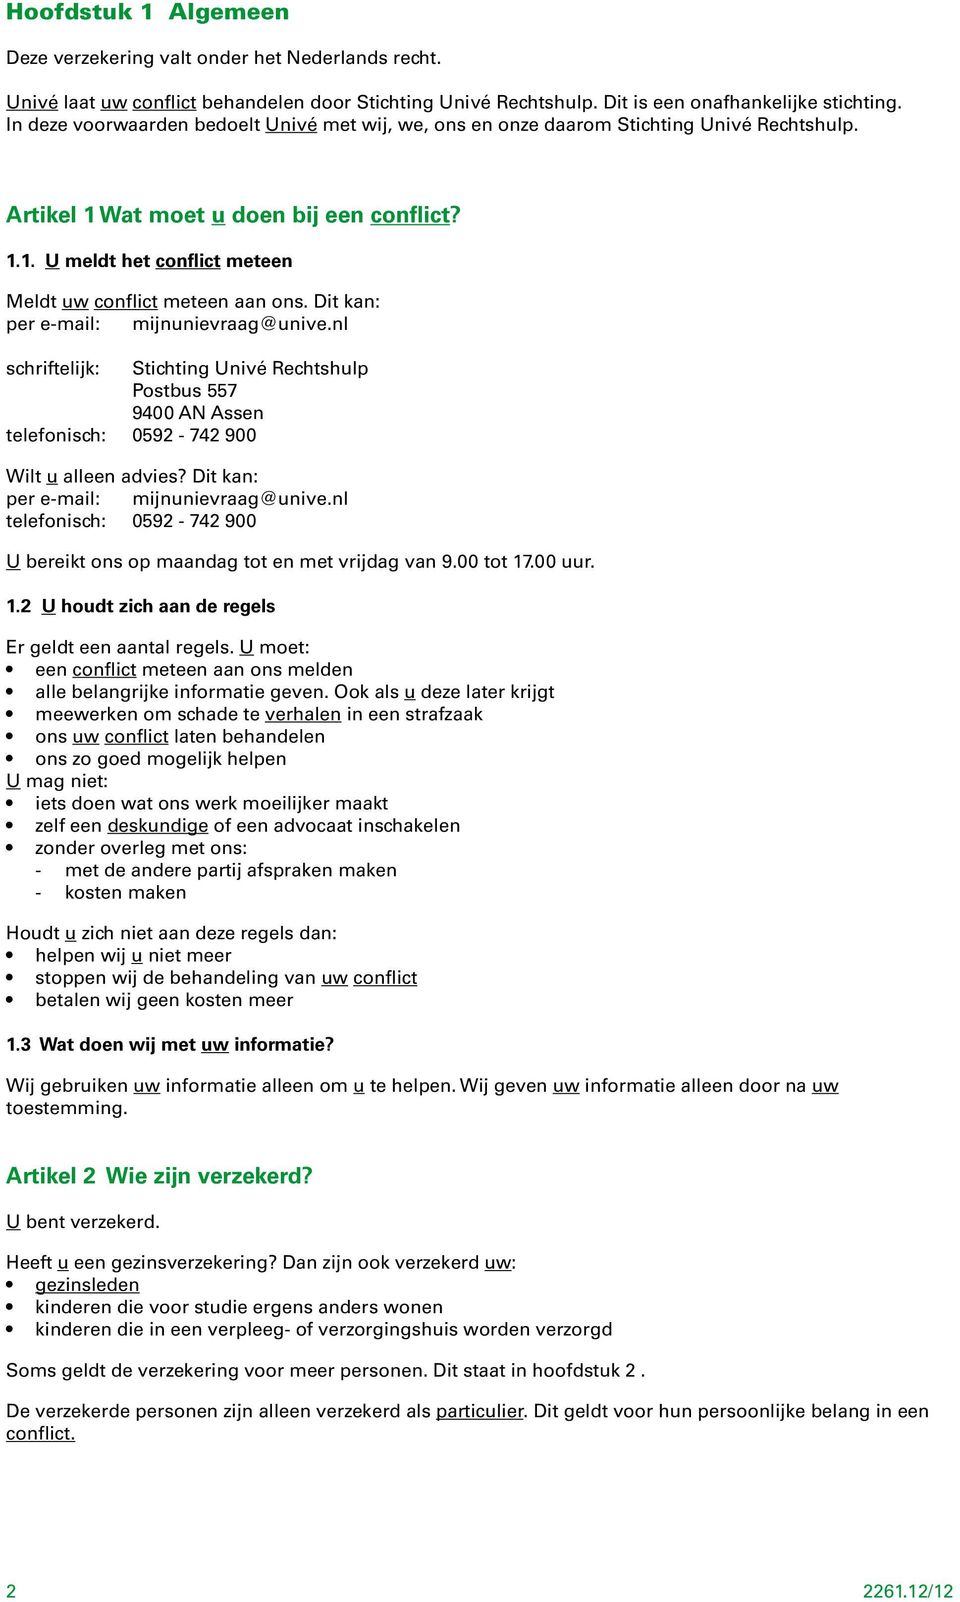 Dit kan: per e-mail: mijnunievraag@unive.nl schriftelijk: Stichting Univé Rechtshulp Postbus 557 9400 AN Assen telefonisch: 0592-742 900 Wilt u alleen advies? Dit kan: per e-mail: mijnunievraag@unive.